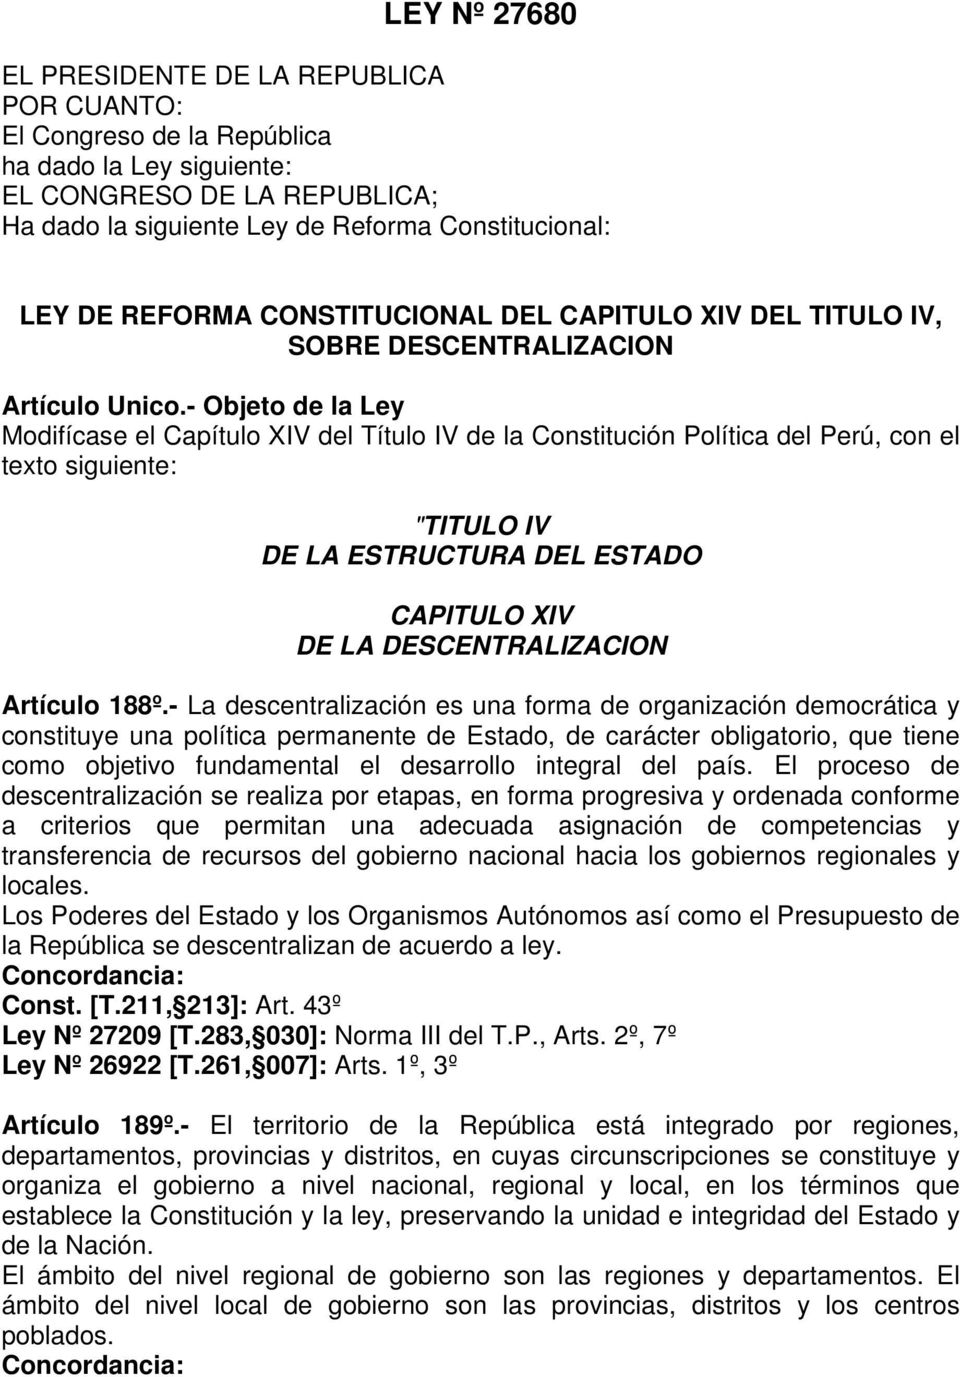 - Objeto de la Ley Modifícase el Capítulo XIV del Título IV de la Constitución Política del Perú, con el texto siguiente: "TITULO IV DE LA ESTRUCTURA DEL ESTADO CAPITULO XIV DE LA DESCENTRALIZACION